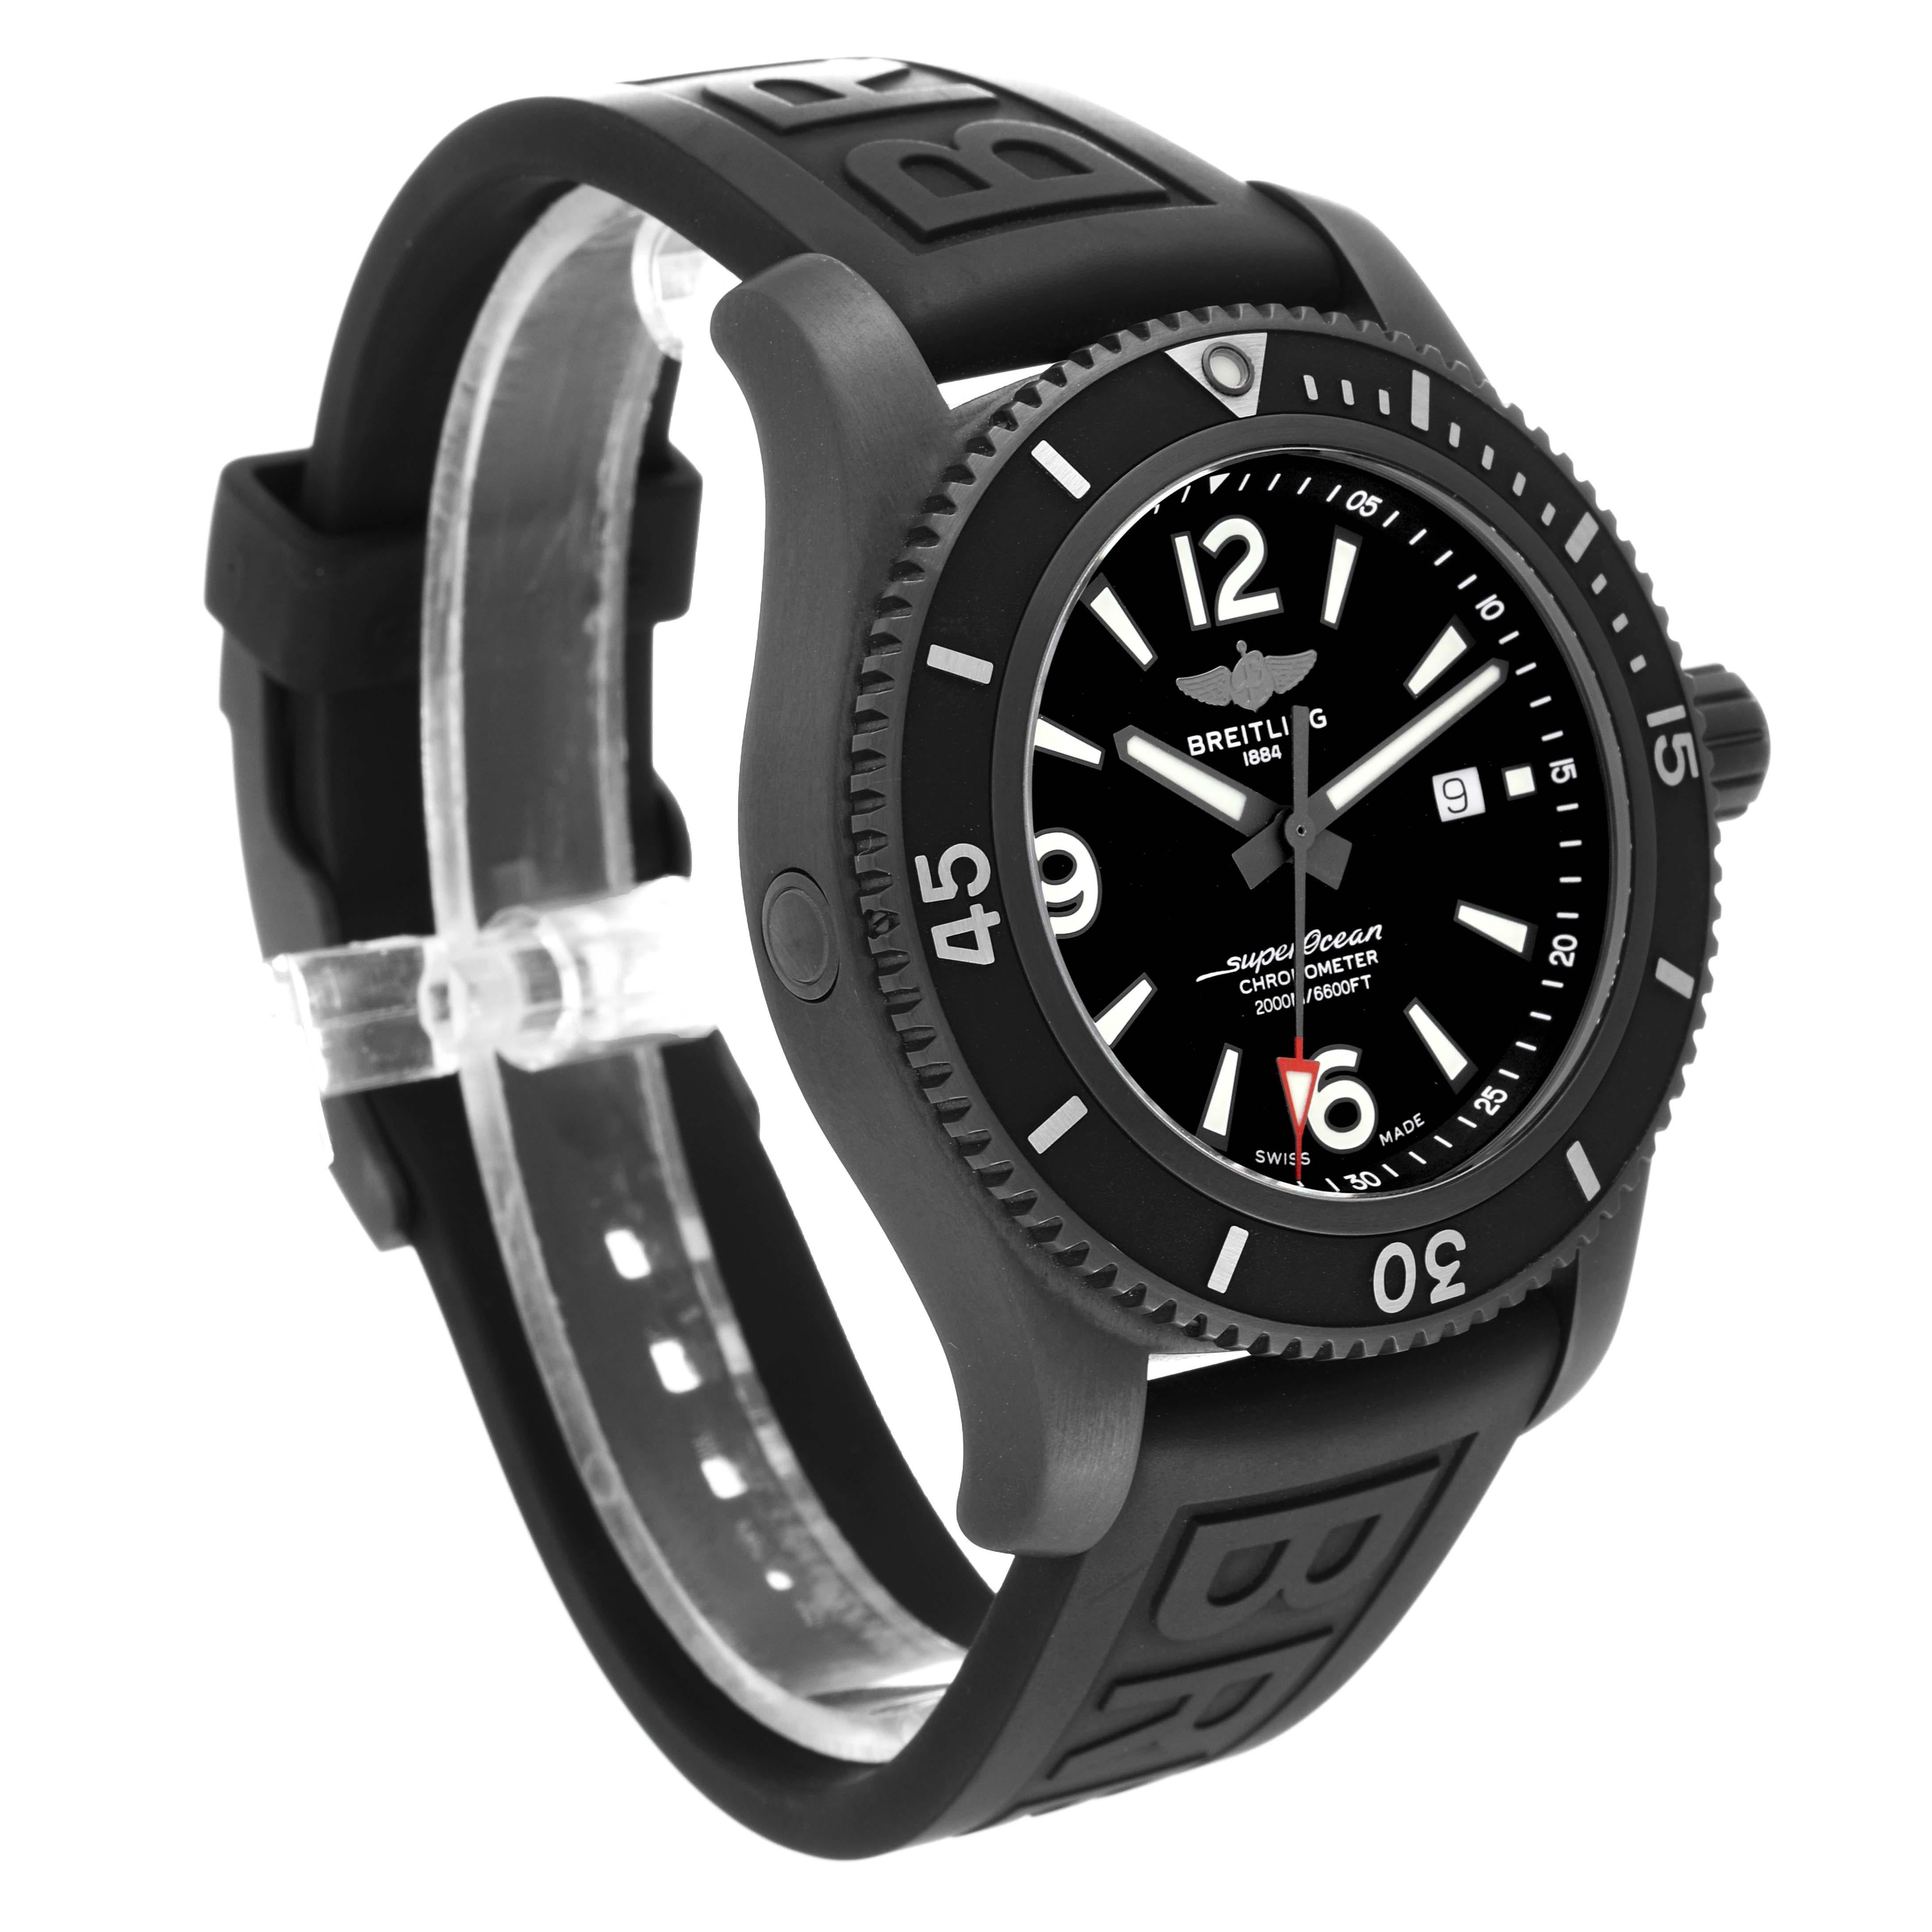 Breitling Superocean 46 schwarzes Zifferblatt DLC Stahl Herrenuhr M17368 Box Card. Automatisches Uhrwerk mit Selbstaufzug. DLC-beschichtetes Edelstahlgehäuse mit einem Durchmesser von 46,0 mm. Verschraubte Krone aus Edelstahl. Schwarze, einseitig